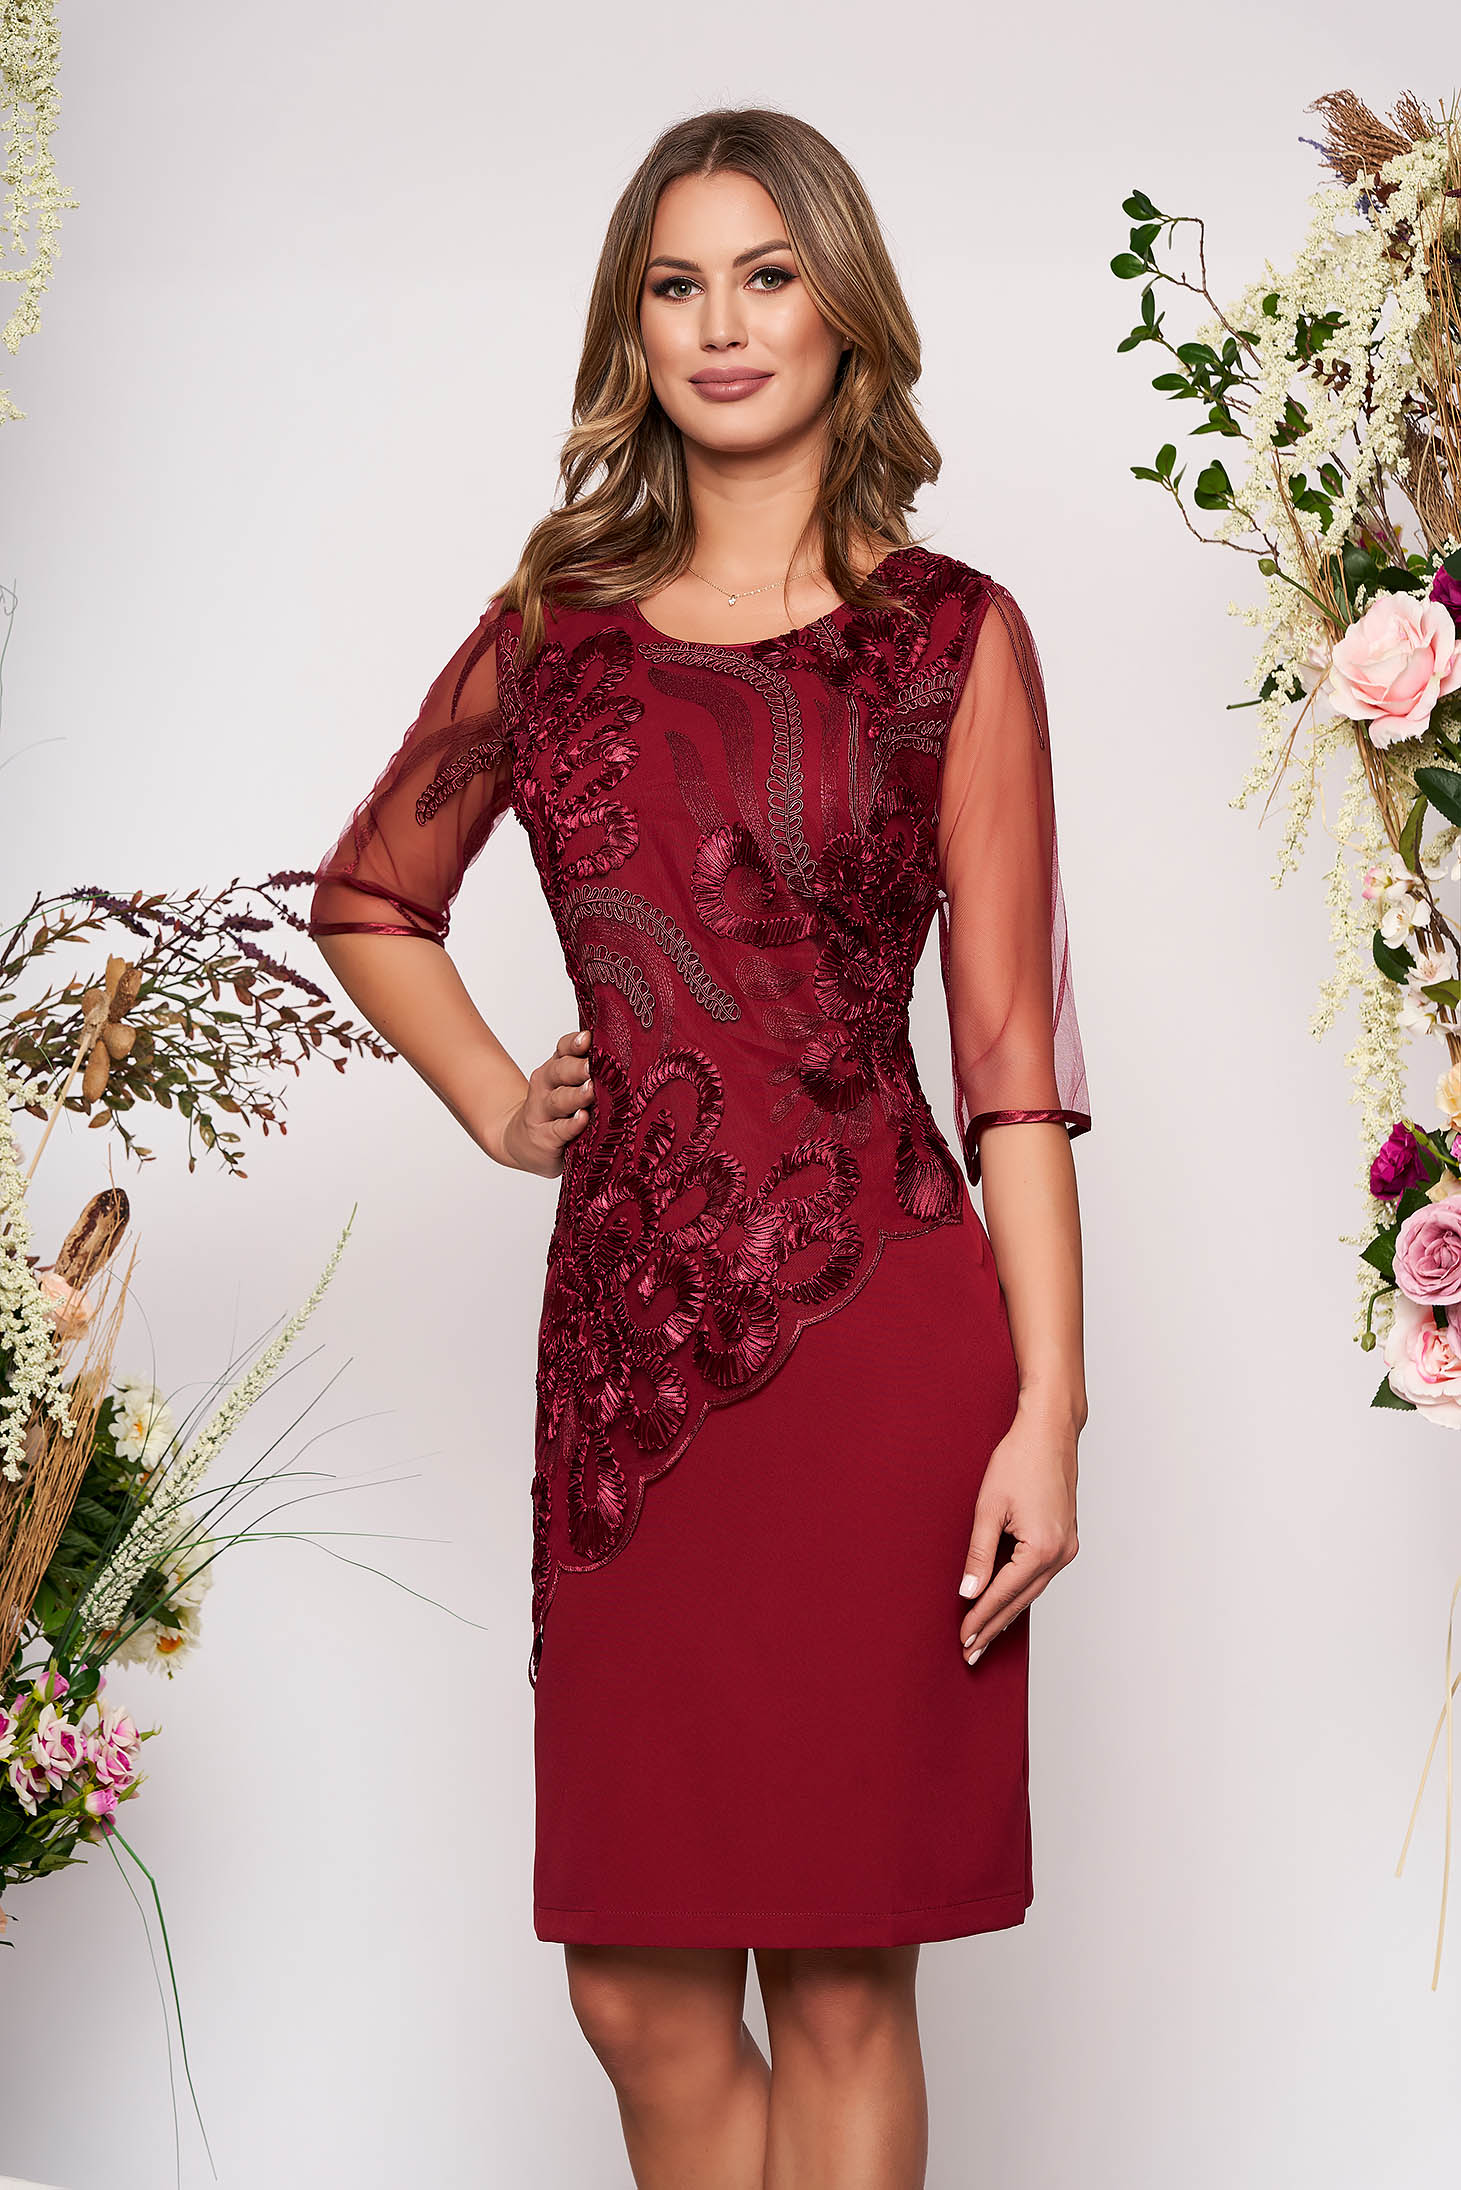 burgundy overlay dress